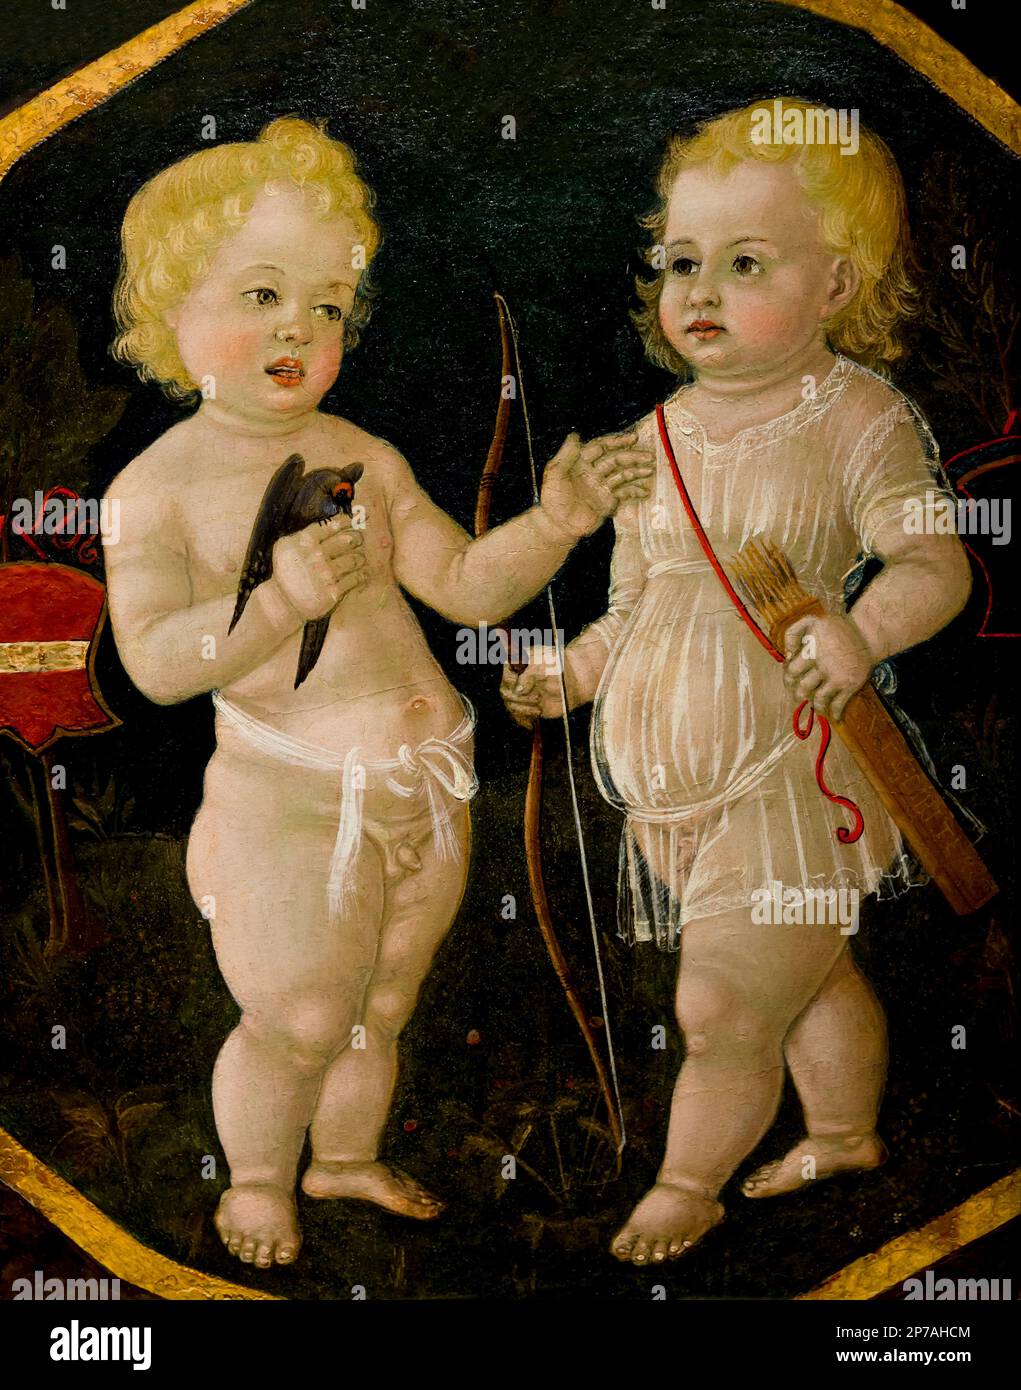 Two Young Boys, Matteo di Giovanni, circa 1490, desco da parto, birth tray, Art Institute of Chicago, Chicago, Illinois, USA, North America, Stock Photo